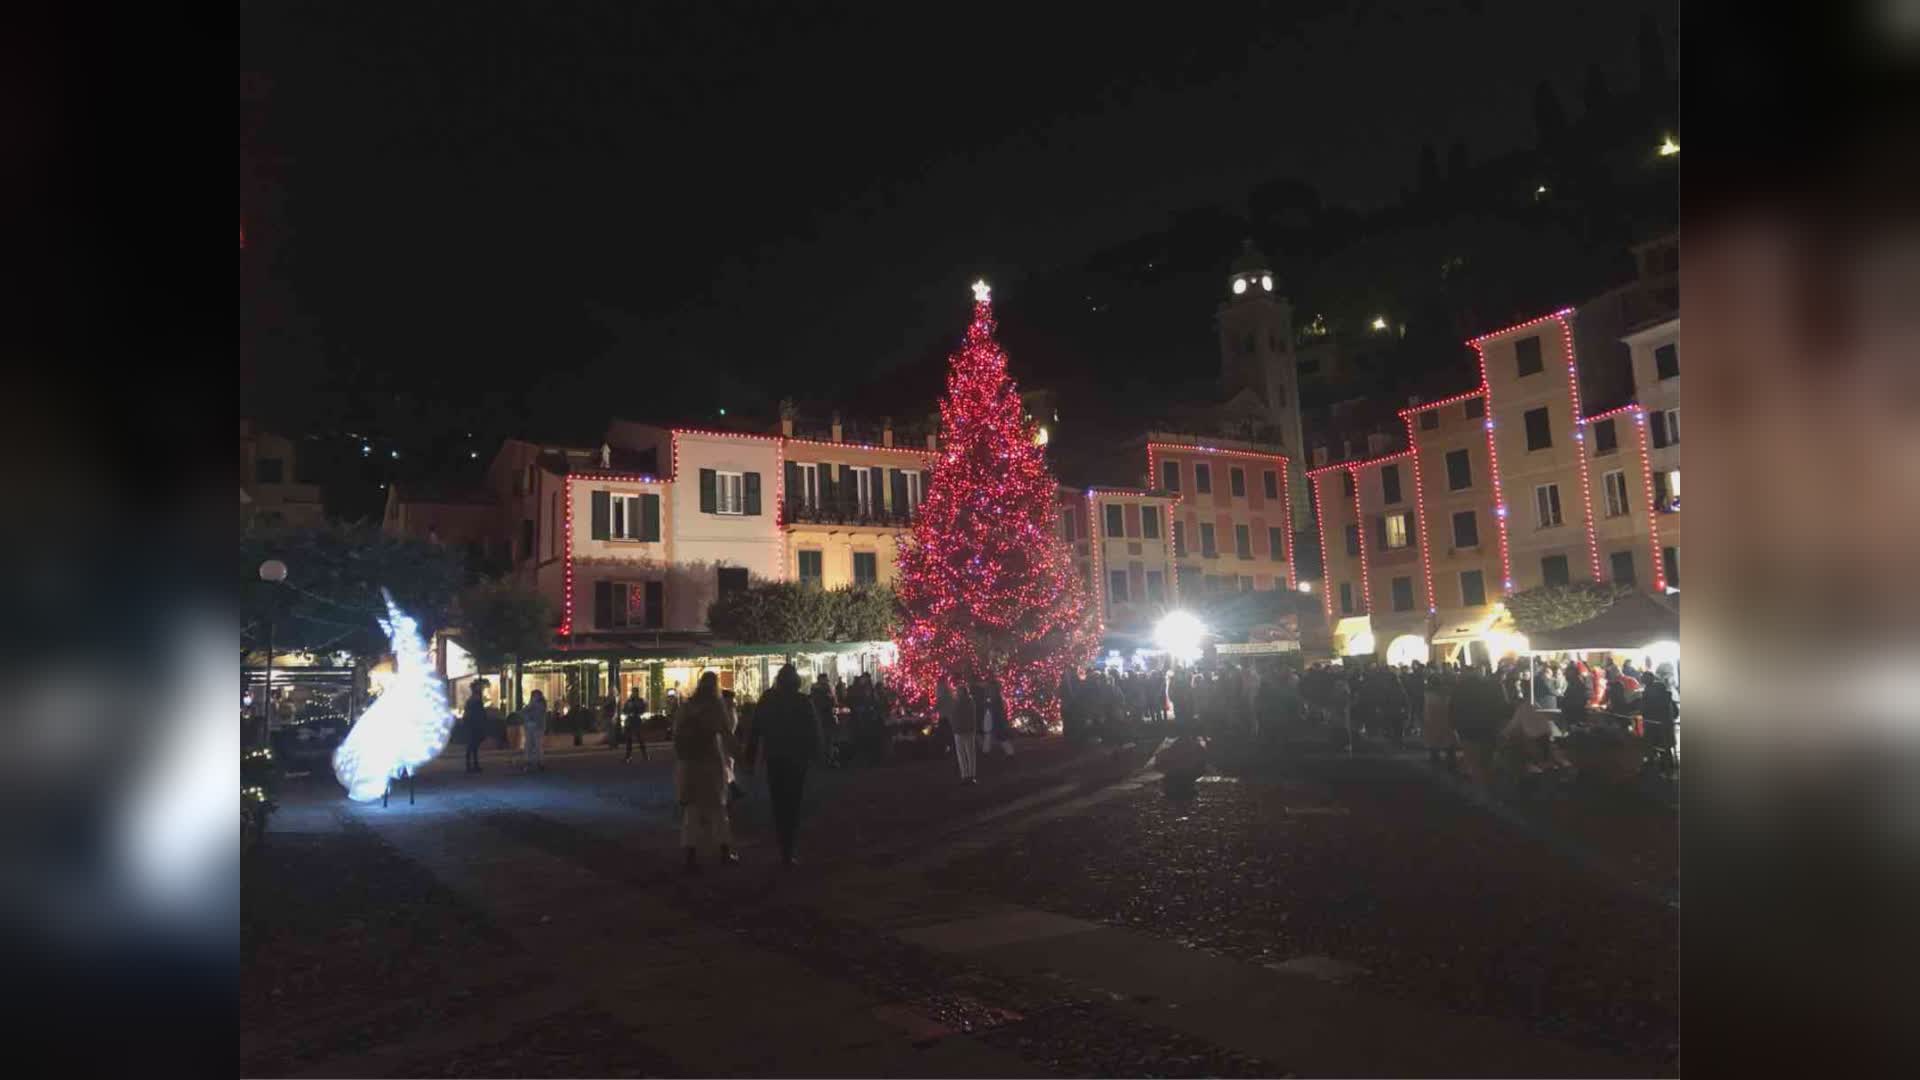 Portofino, si accende il Natale: illuminato l'albero della piazzetta (FOTOGALLERY)